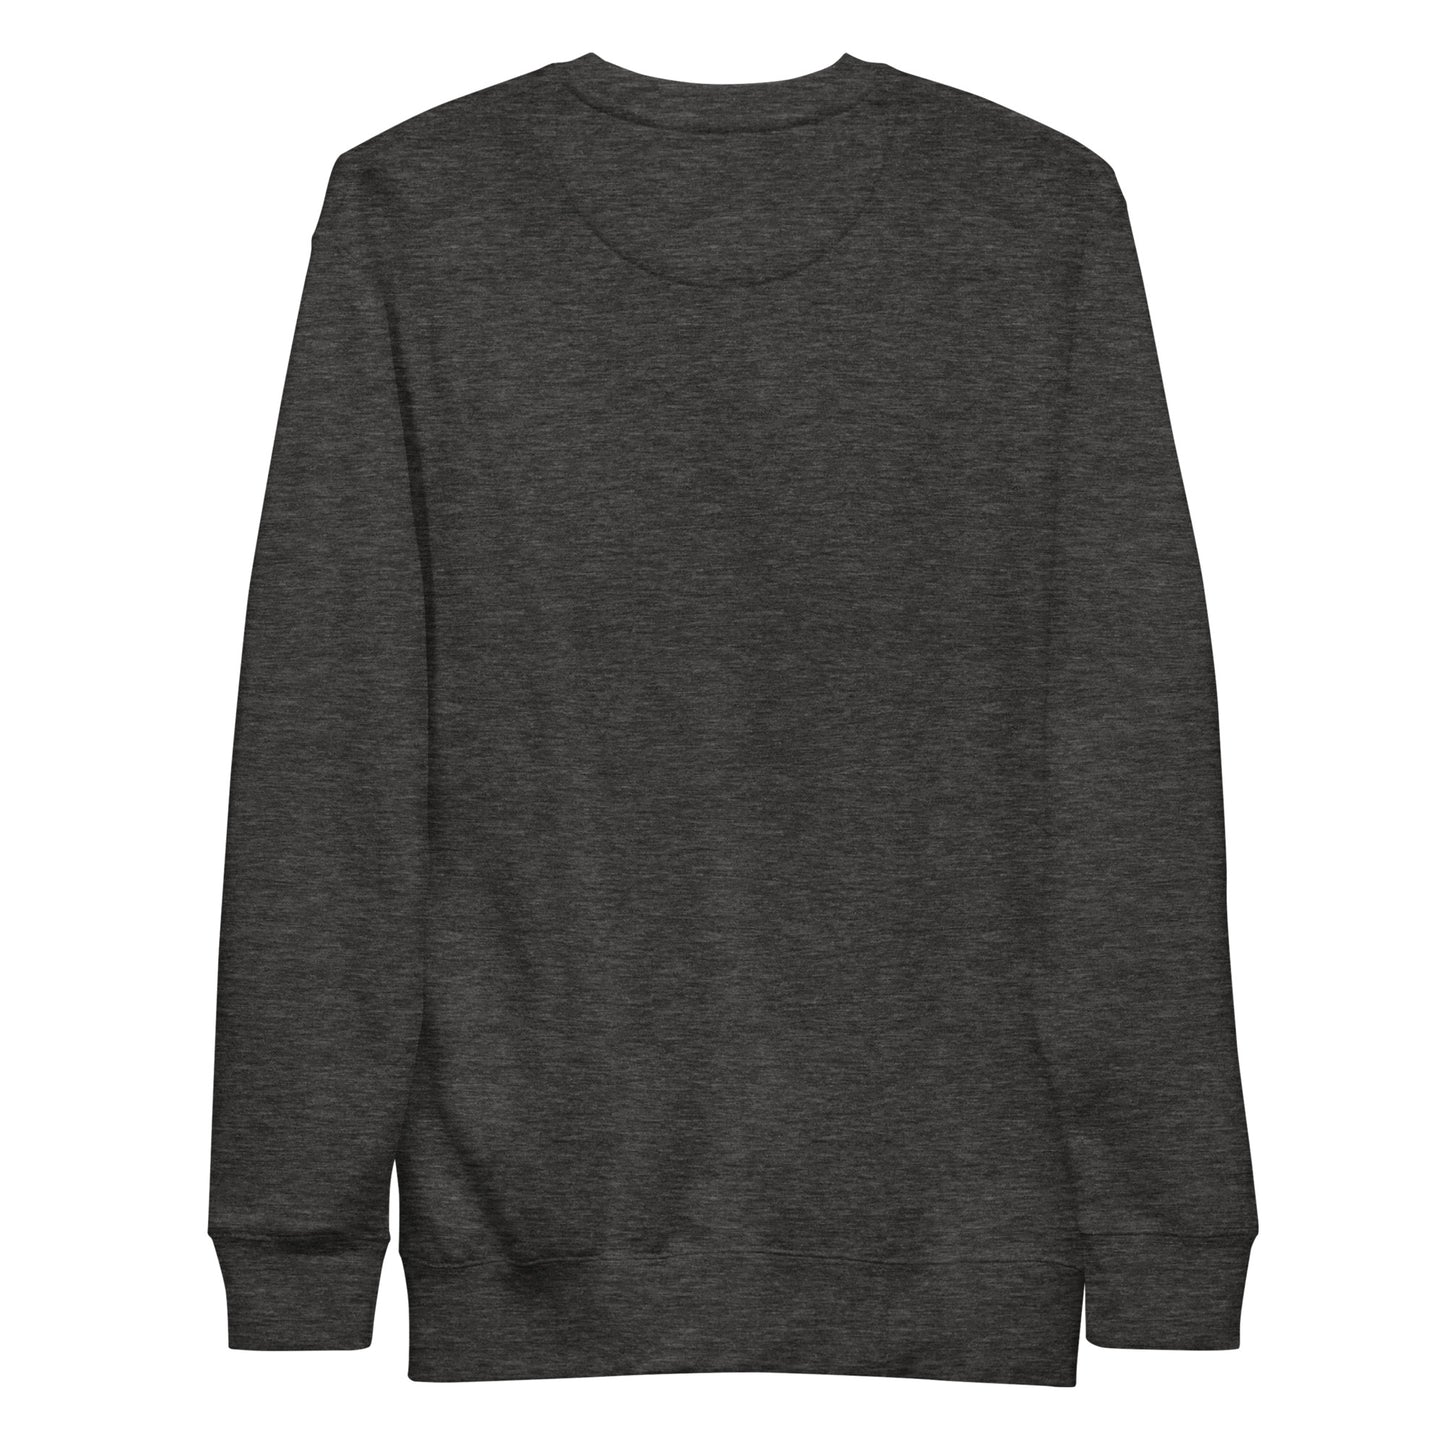 Georgia Unisex Premium Sweatshirt